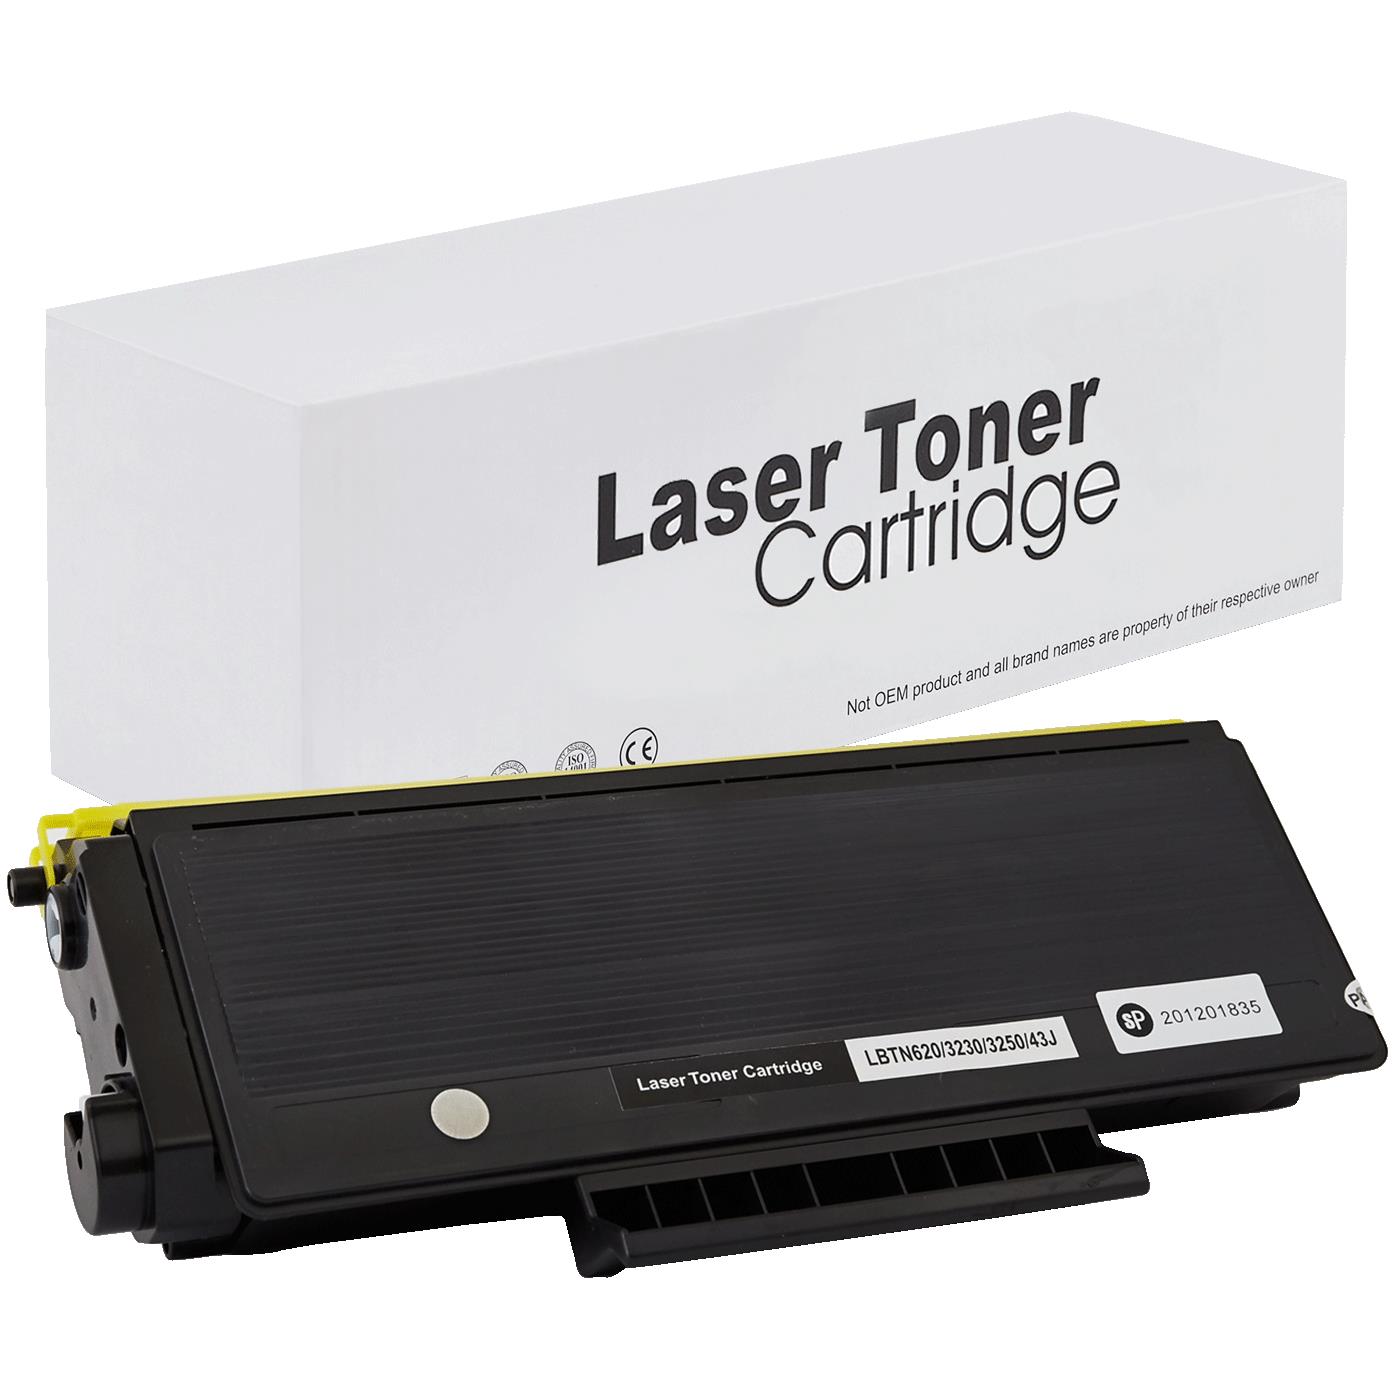 съвместима тонер касета за принтери и печатащи устройства на Brother MFC 8370 Toner BR-3230 | TN3230. Ниски цени, прецизно изпълнение, високо качество.